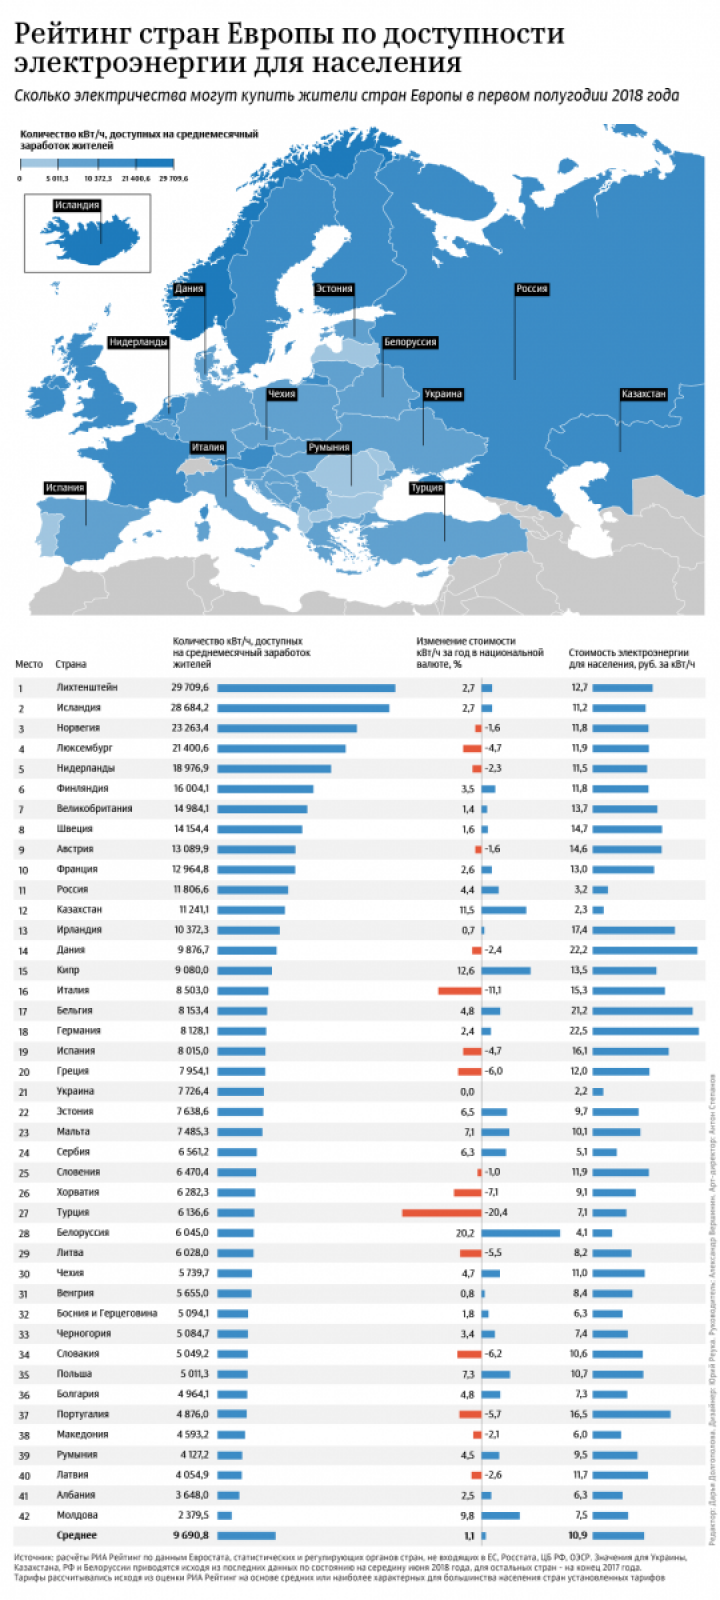 Украина занимает 21 место среди стран Европы по уровню доступности электричества (инфографика)